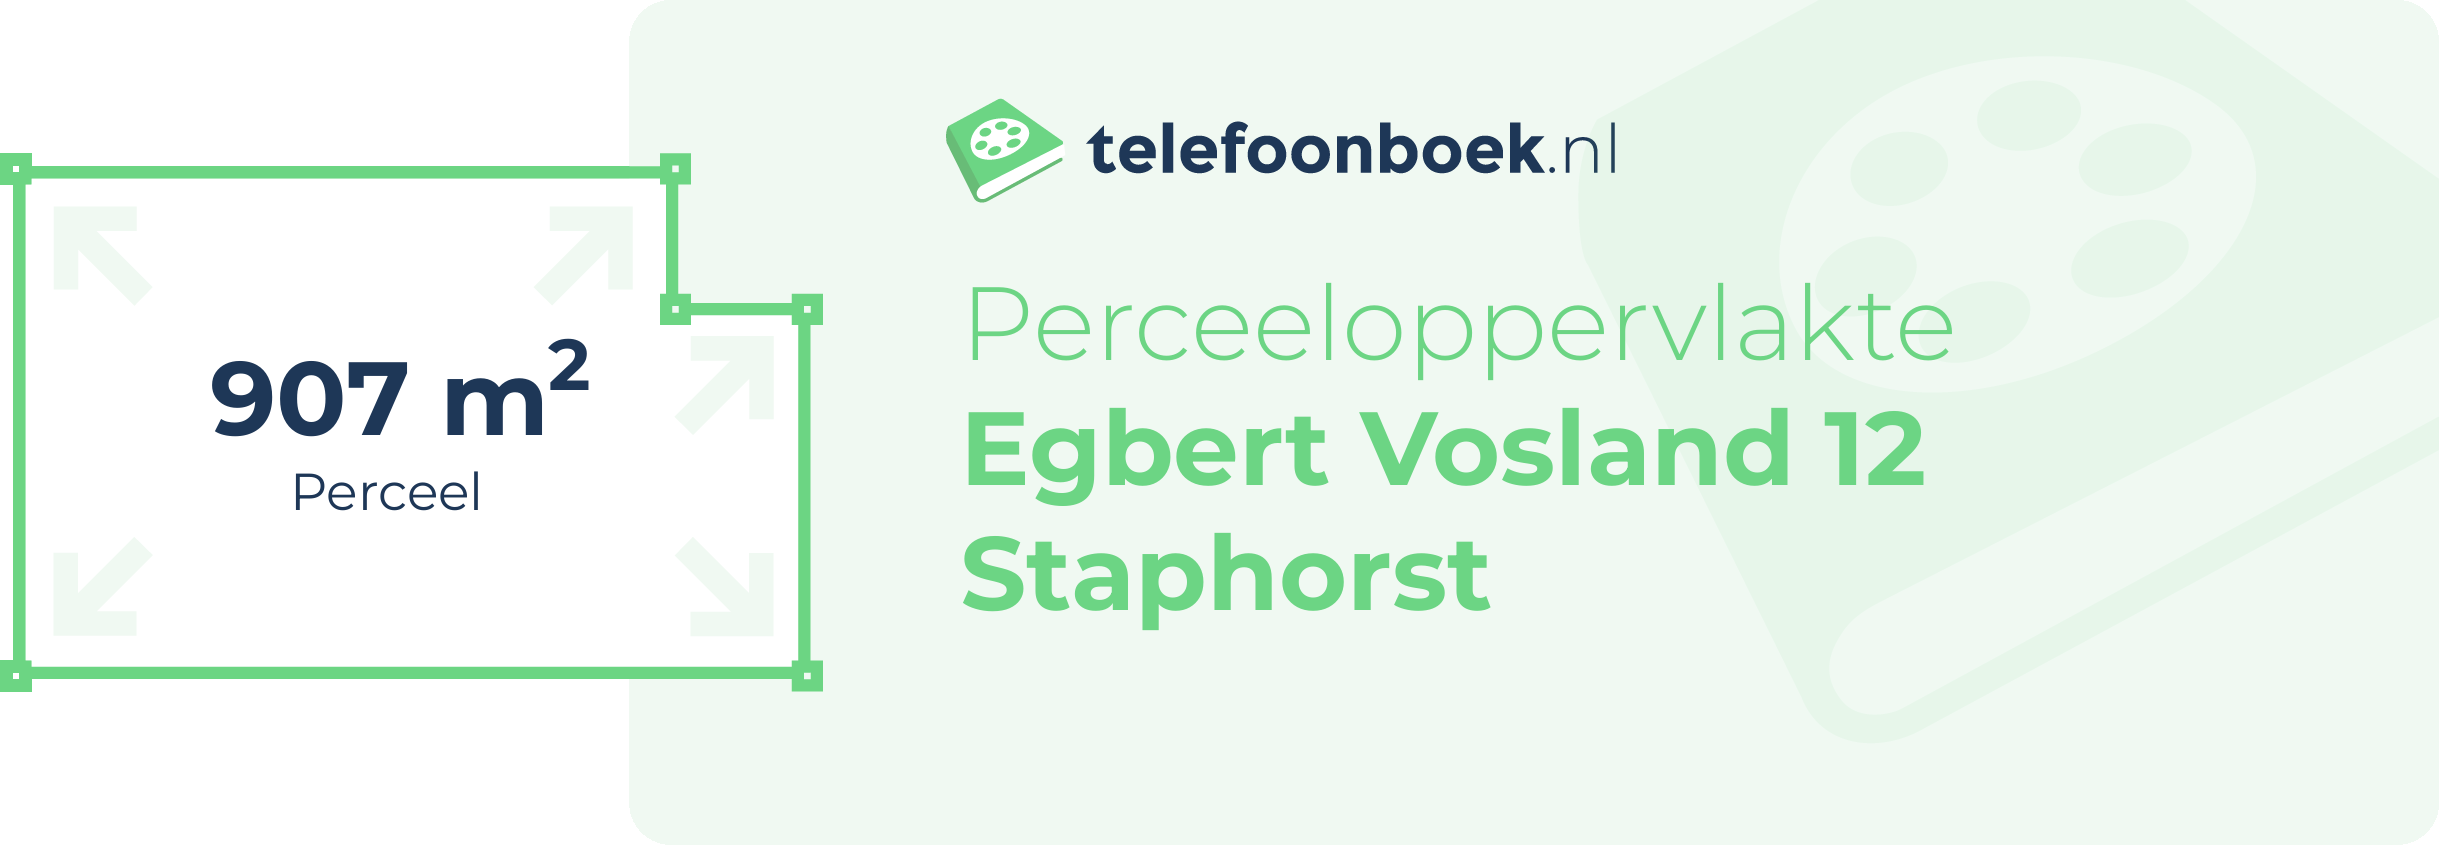 Perceeloppervlakte Egbert Vosland 12 Staphorst